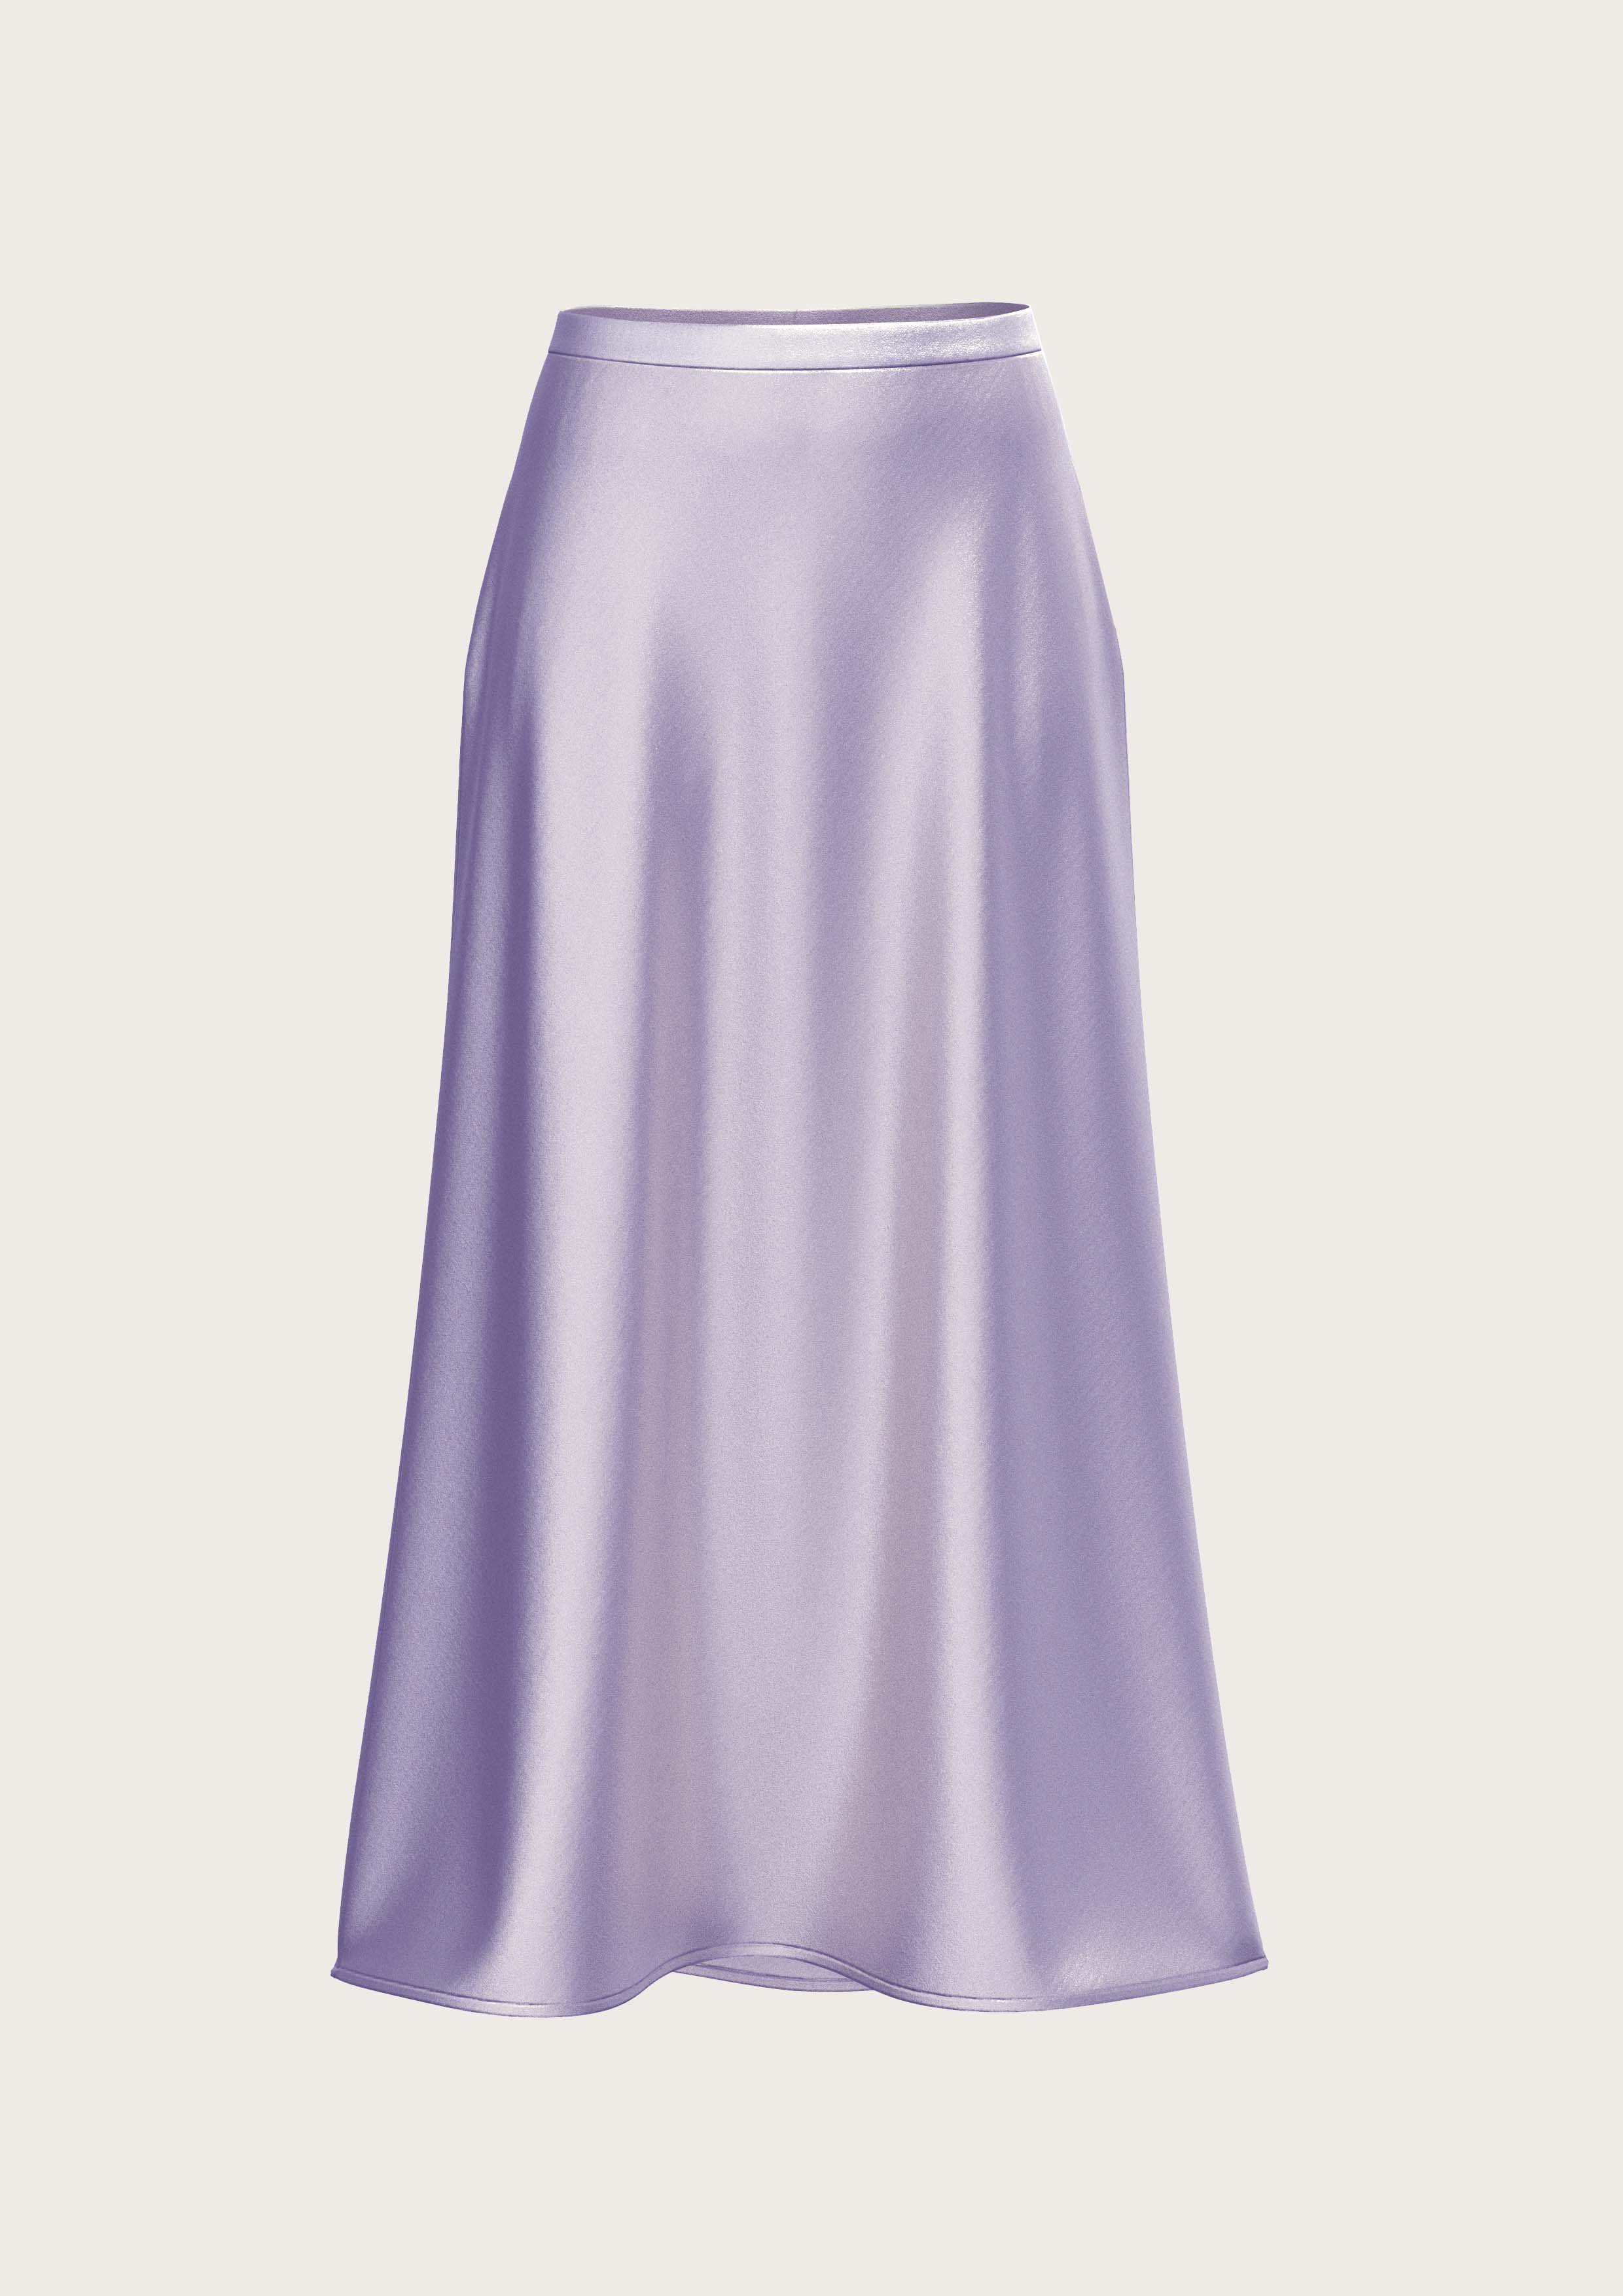 Silk Midi Skirt Meena in Lavender (Kopie)